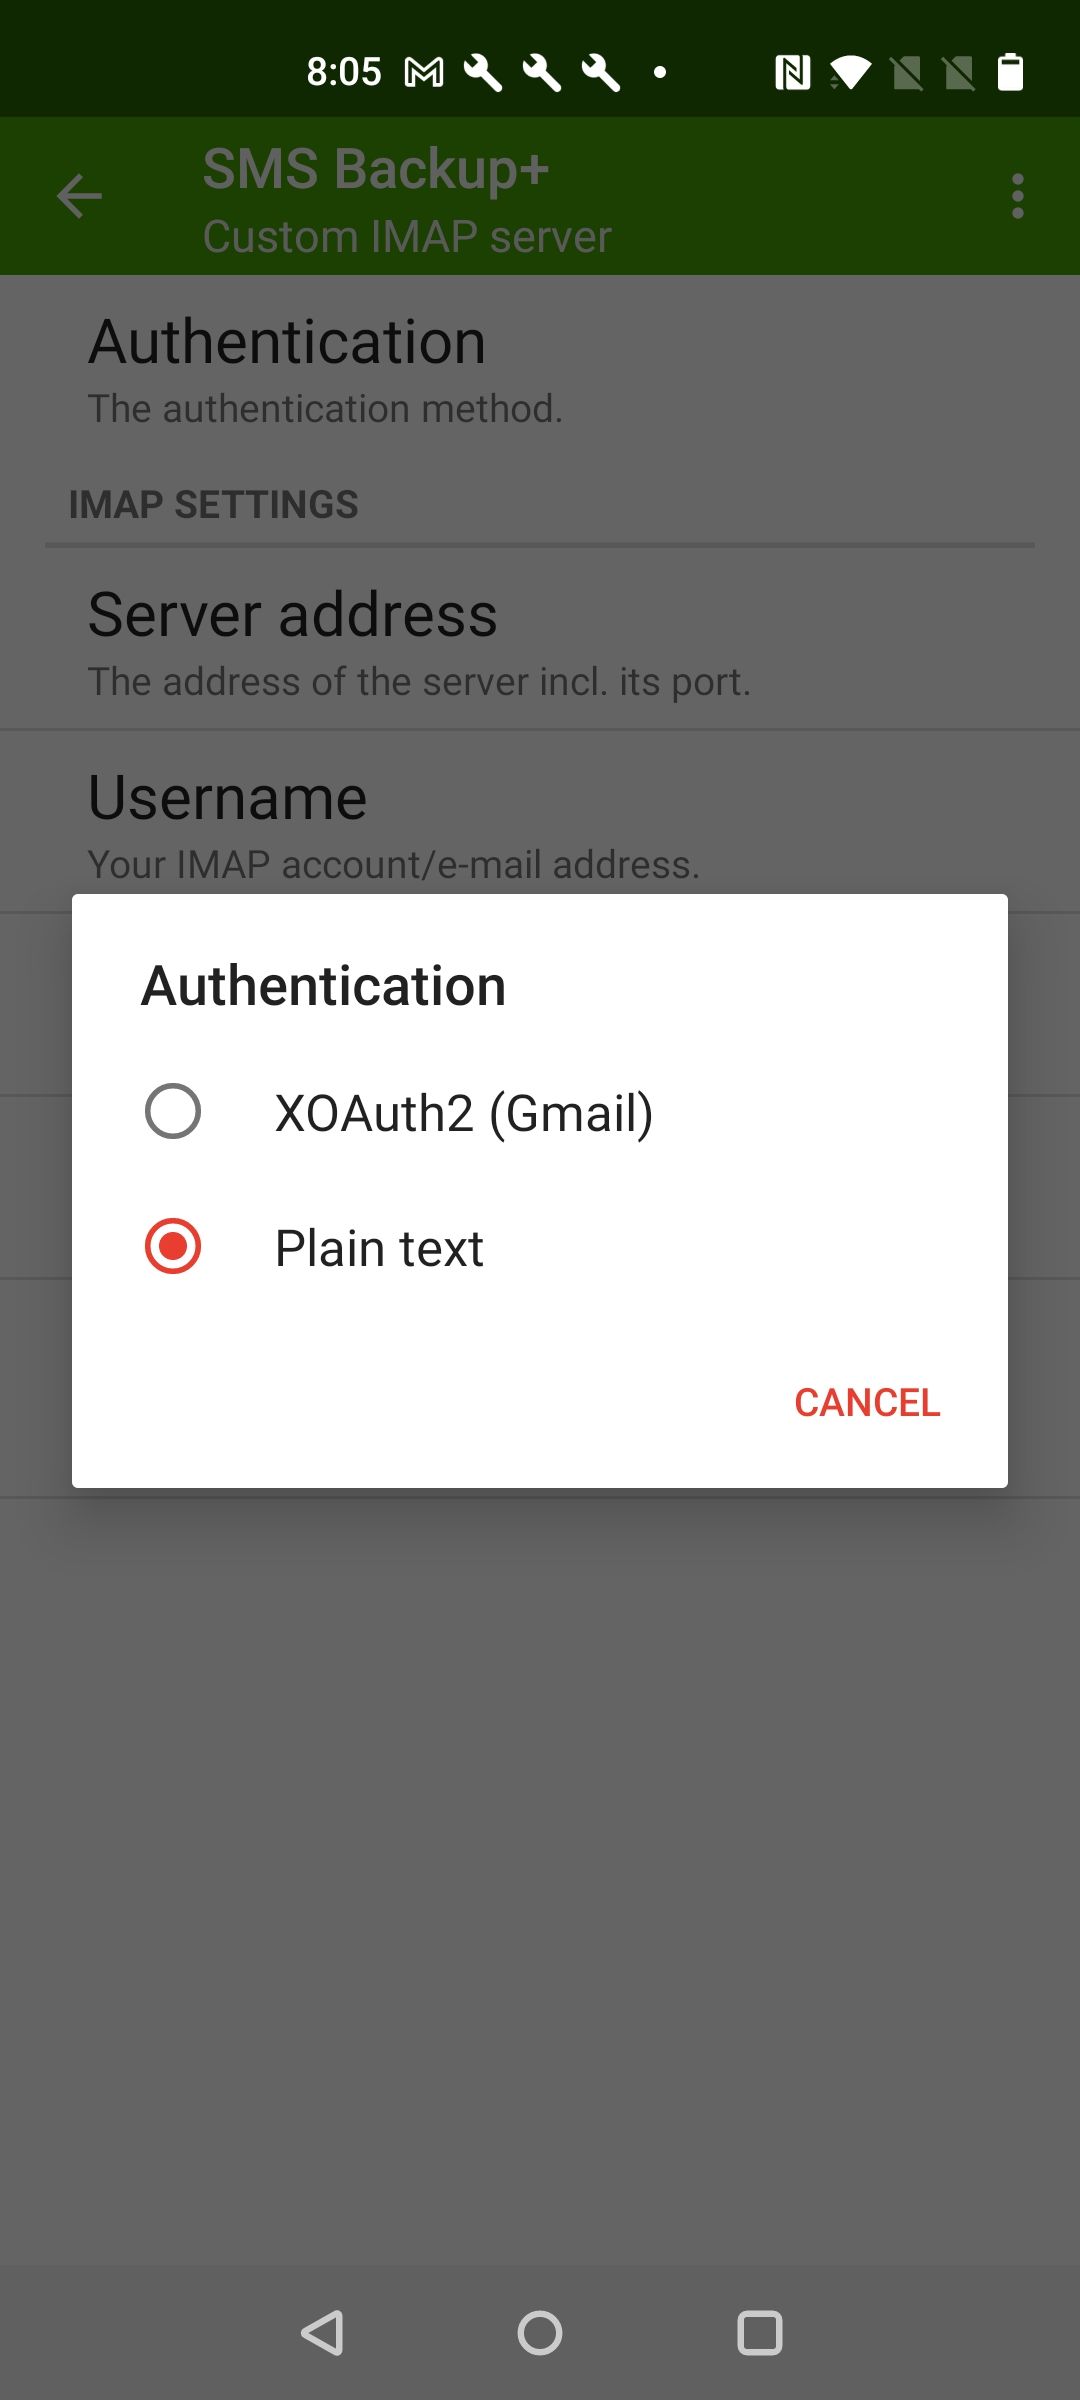 Captura de tela destacando a opção de autenticação 'Texto simples' no SMS Backup+